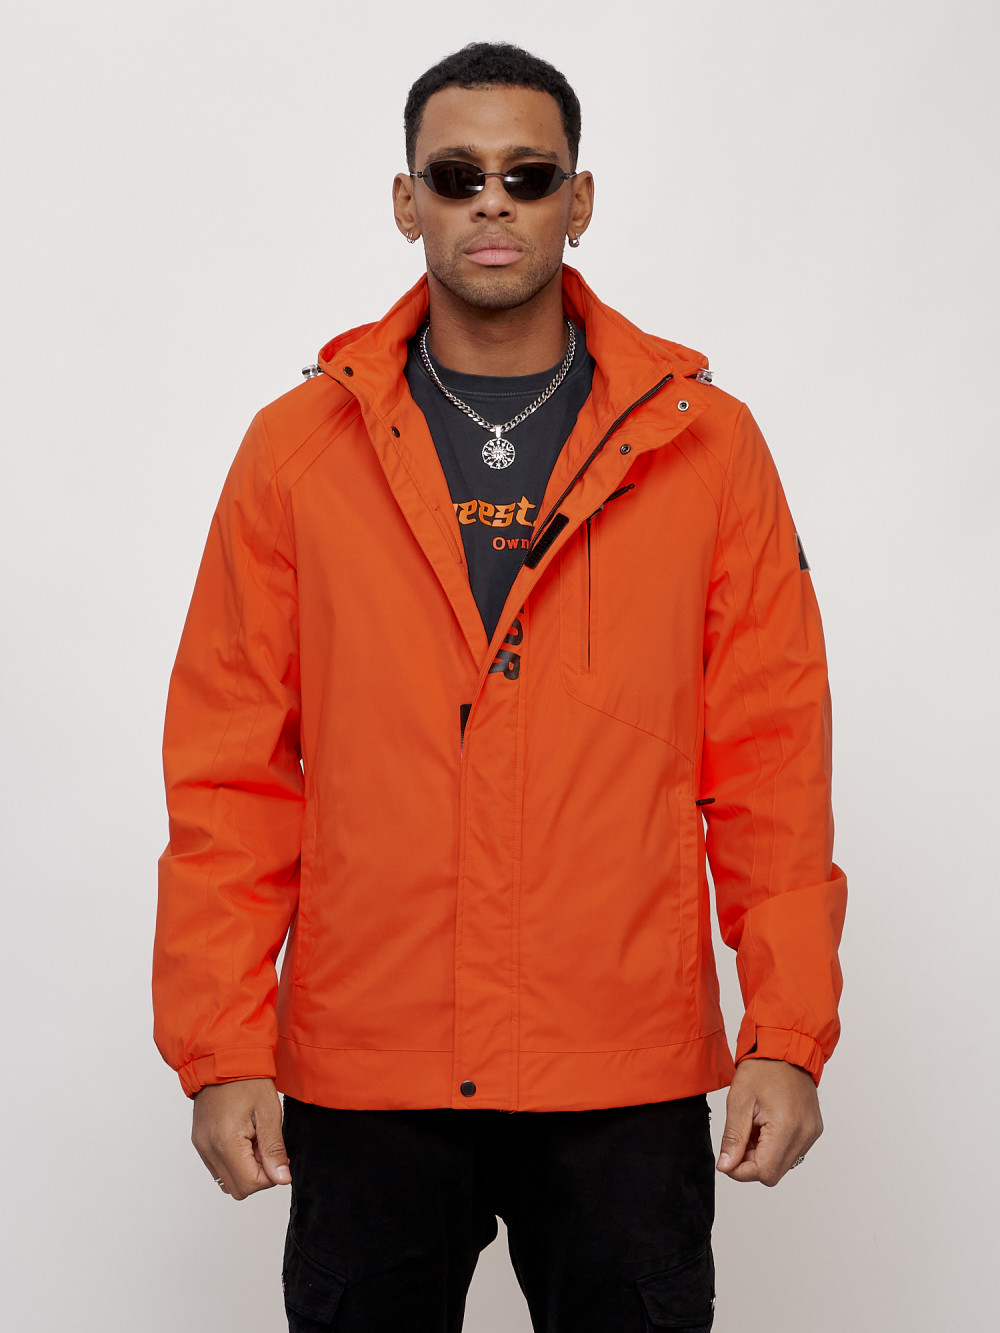 Купить оптом Куртка спортивная мужская весенняя с капюшоном оранжевого цвета 88022O в Екатеринбурге